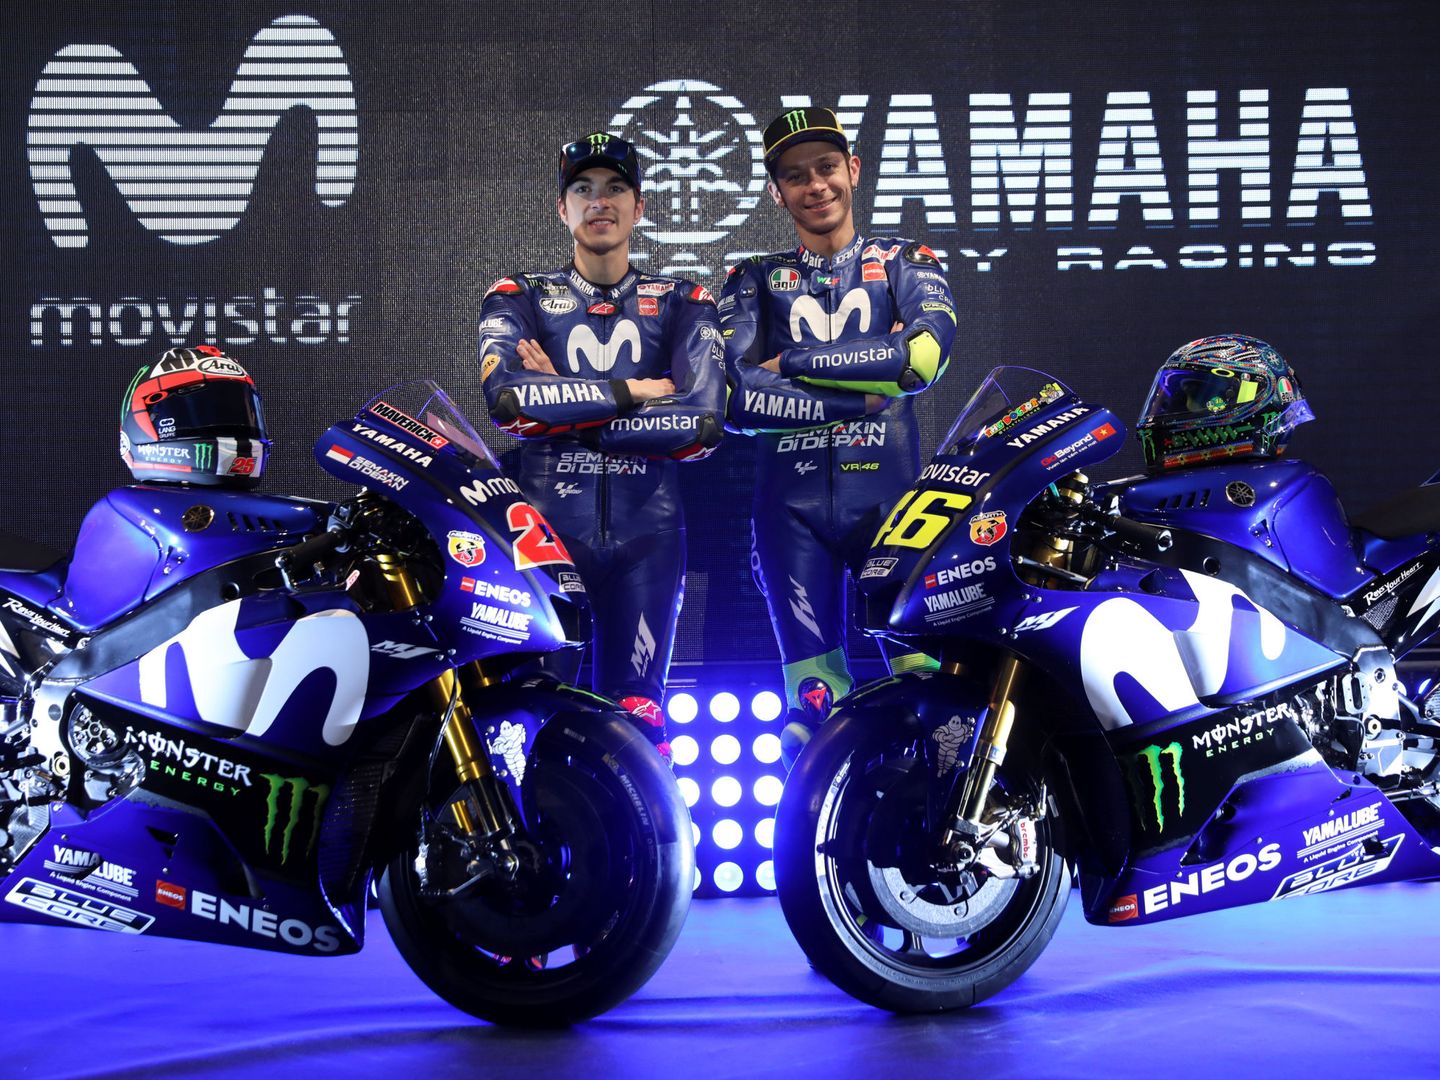 El equipo oficial de Yamaha no gana una carrera de MotoGP desde el Gran Premio de los Países Bajos 2017. (Reuters)